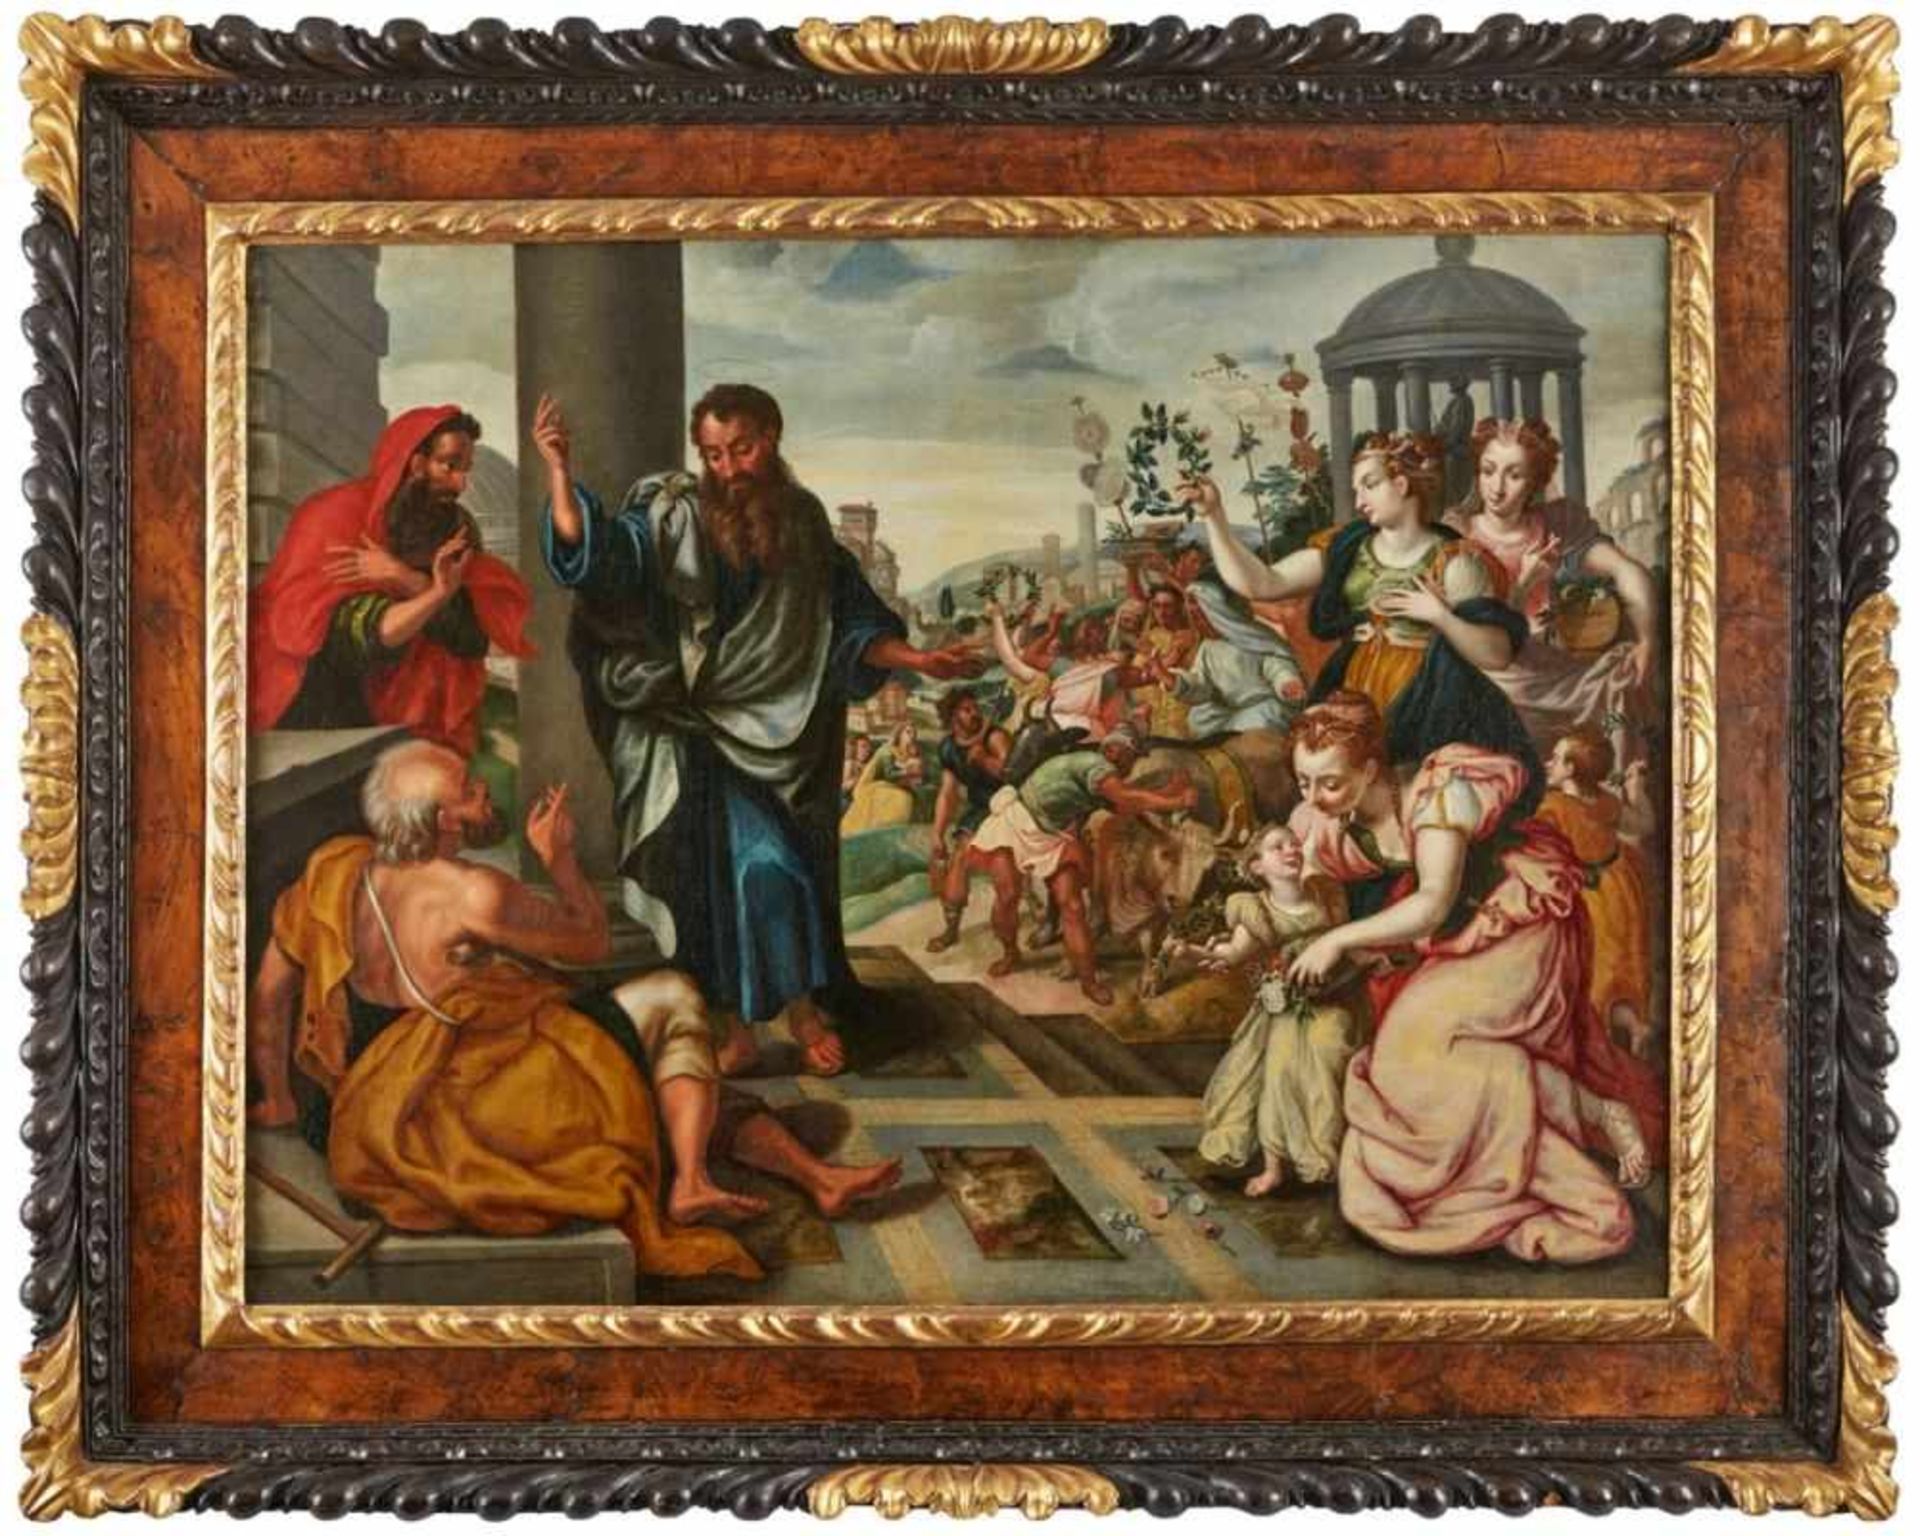 Gemälde Marten de Vos, zugeschrieben1531 Antwerpen - 1603 Antwerpen "Paulus und Barnabas vor dem